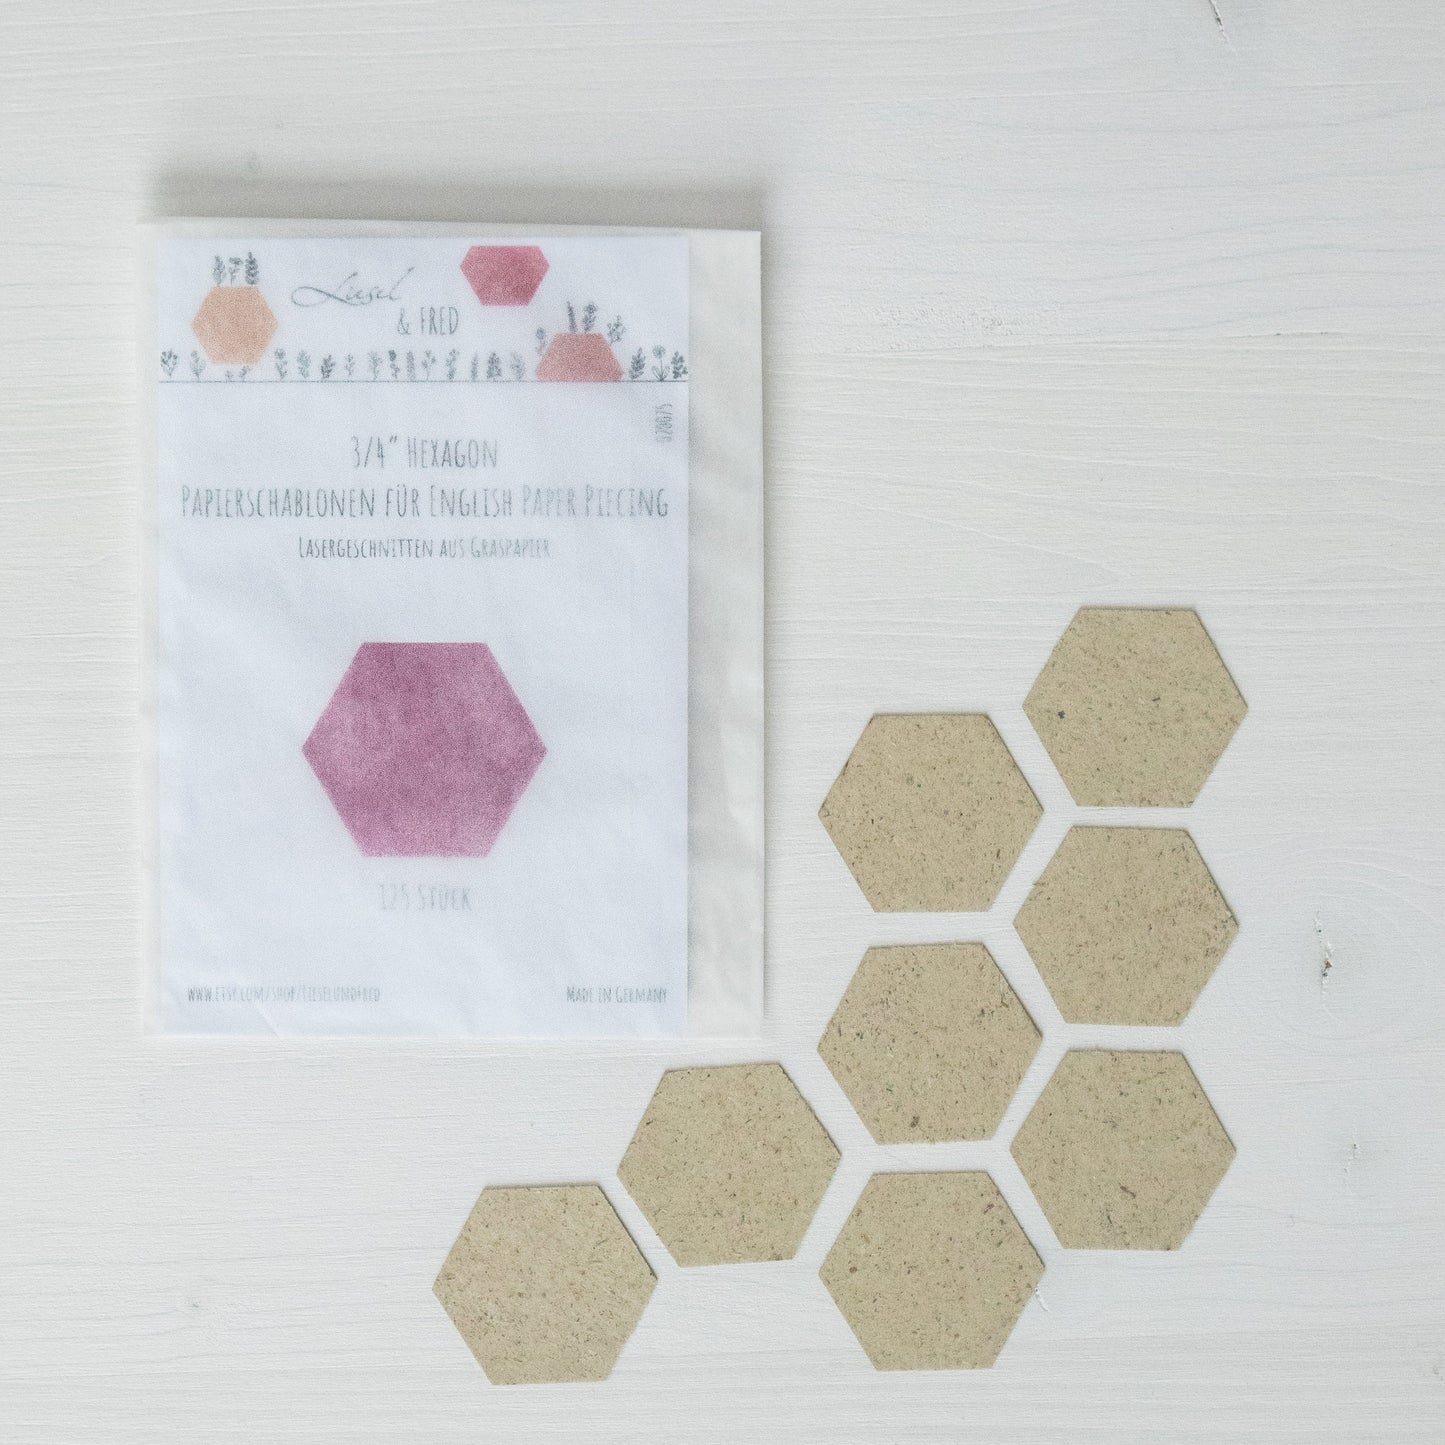 3/4 inch-Hexagon-Papierschablonen (125 Stück) EPP English Paper Piecing Lieseln